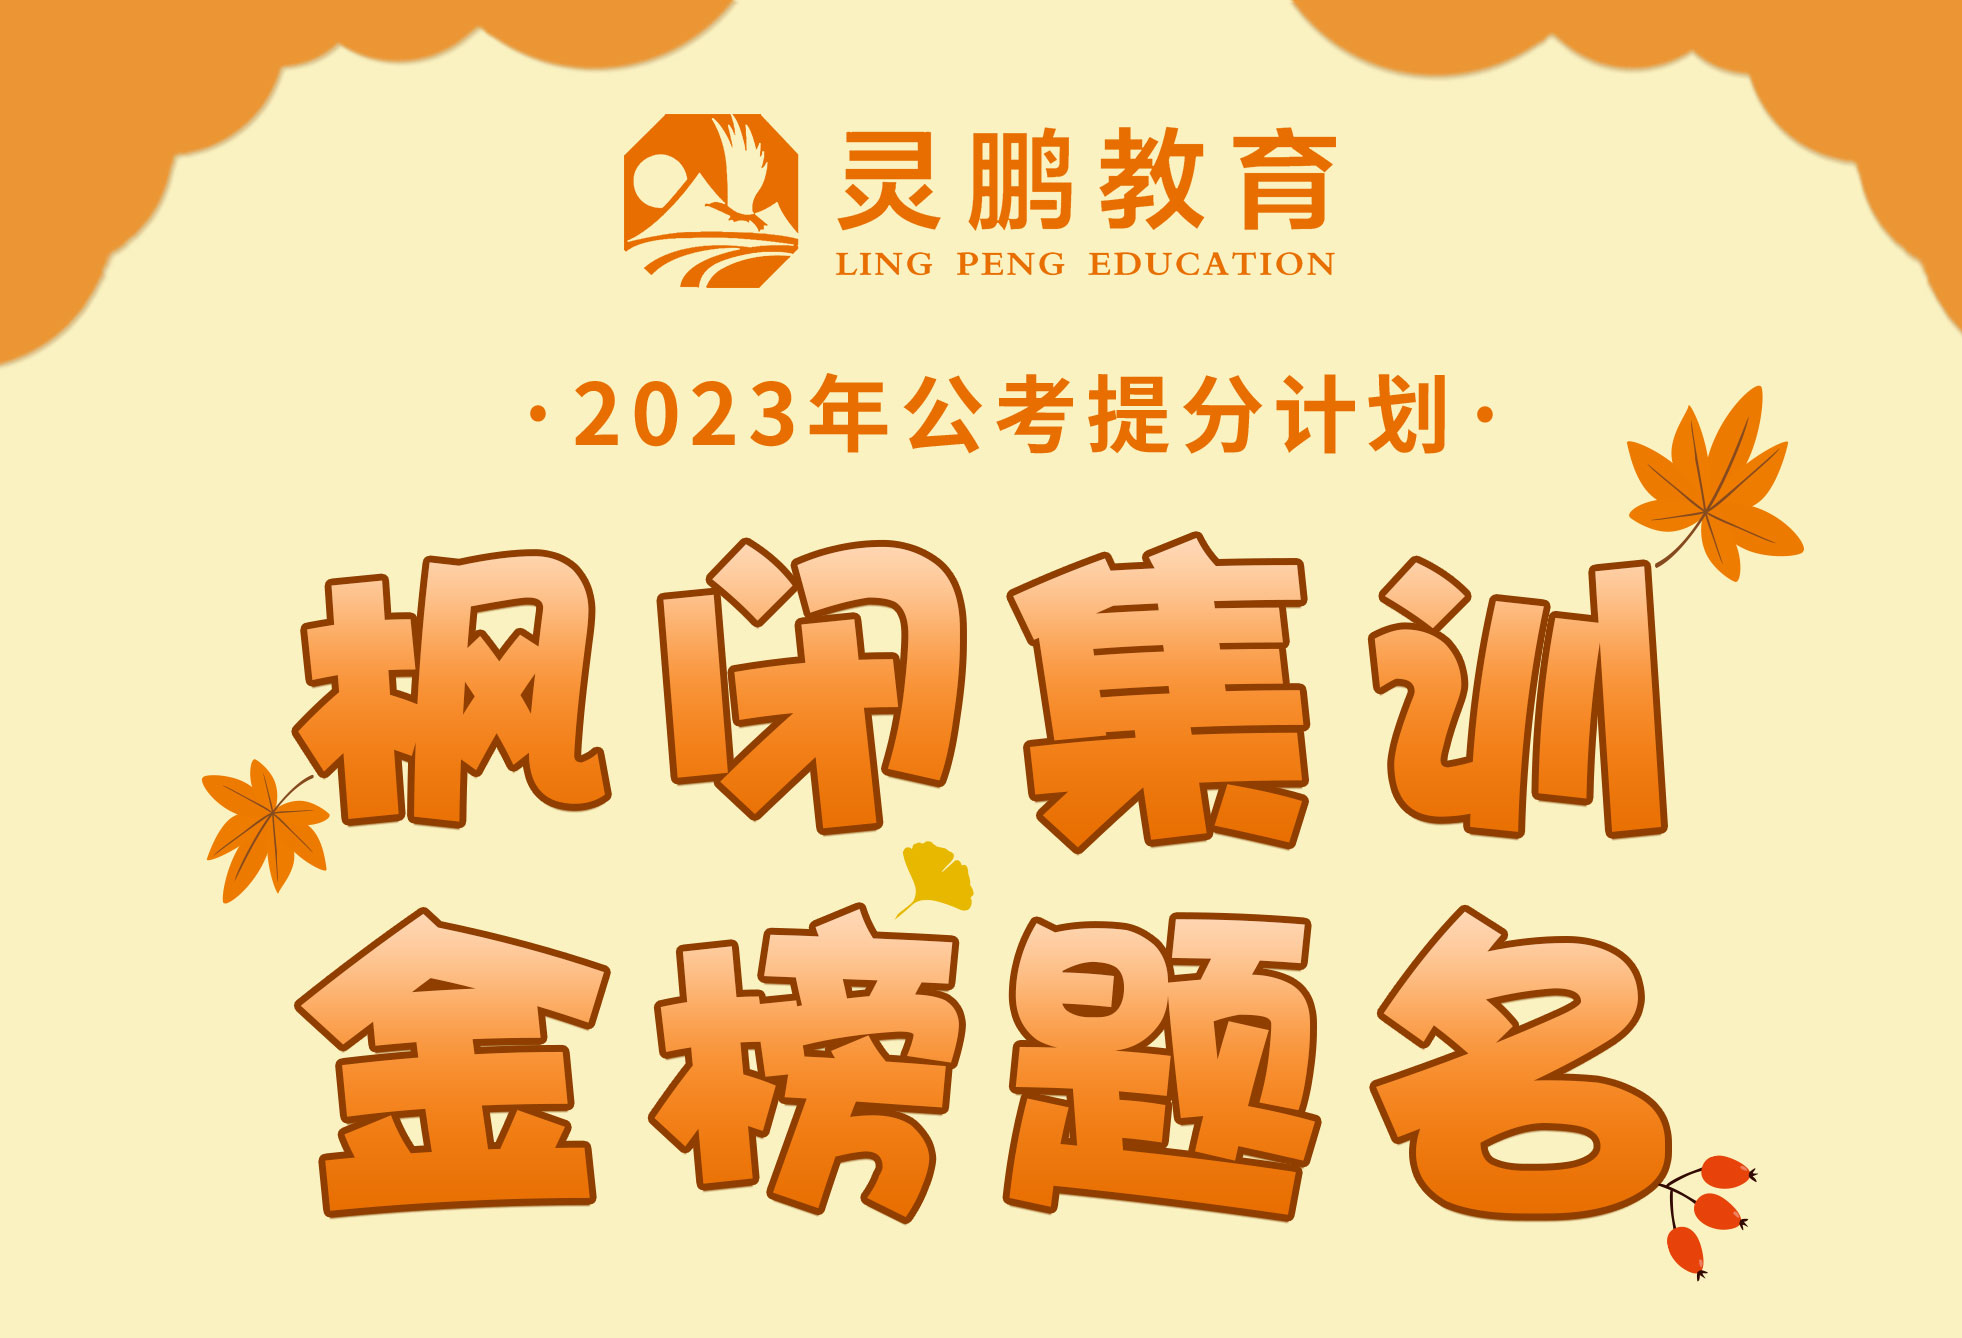 灵鹏教育2023年国家公务员笔试【二期】课程